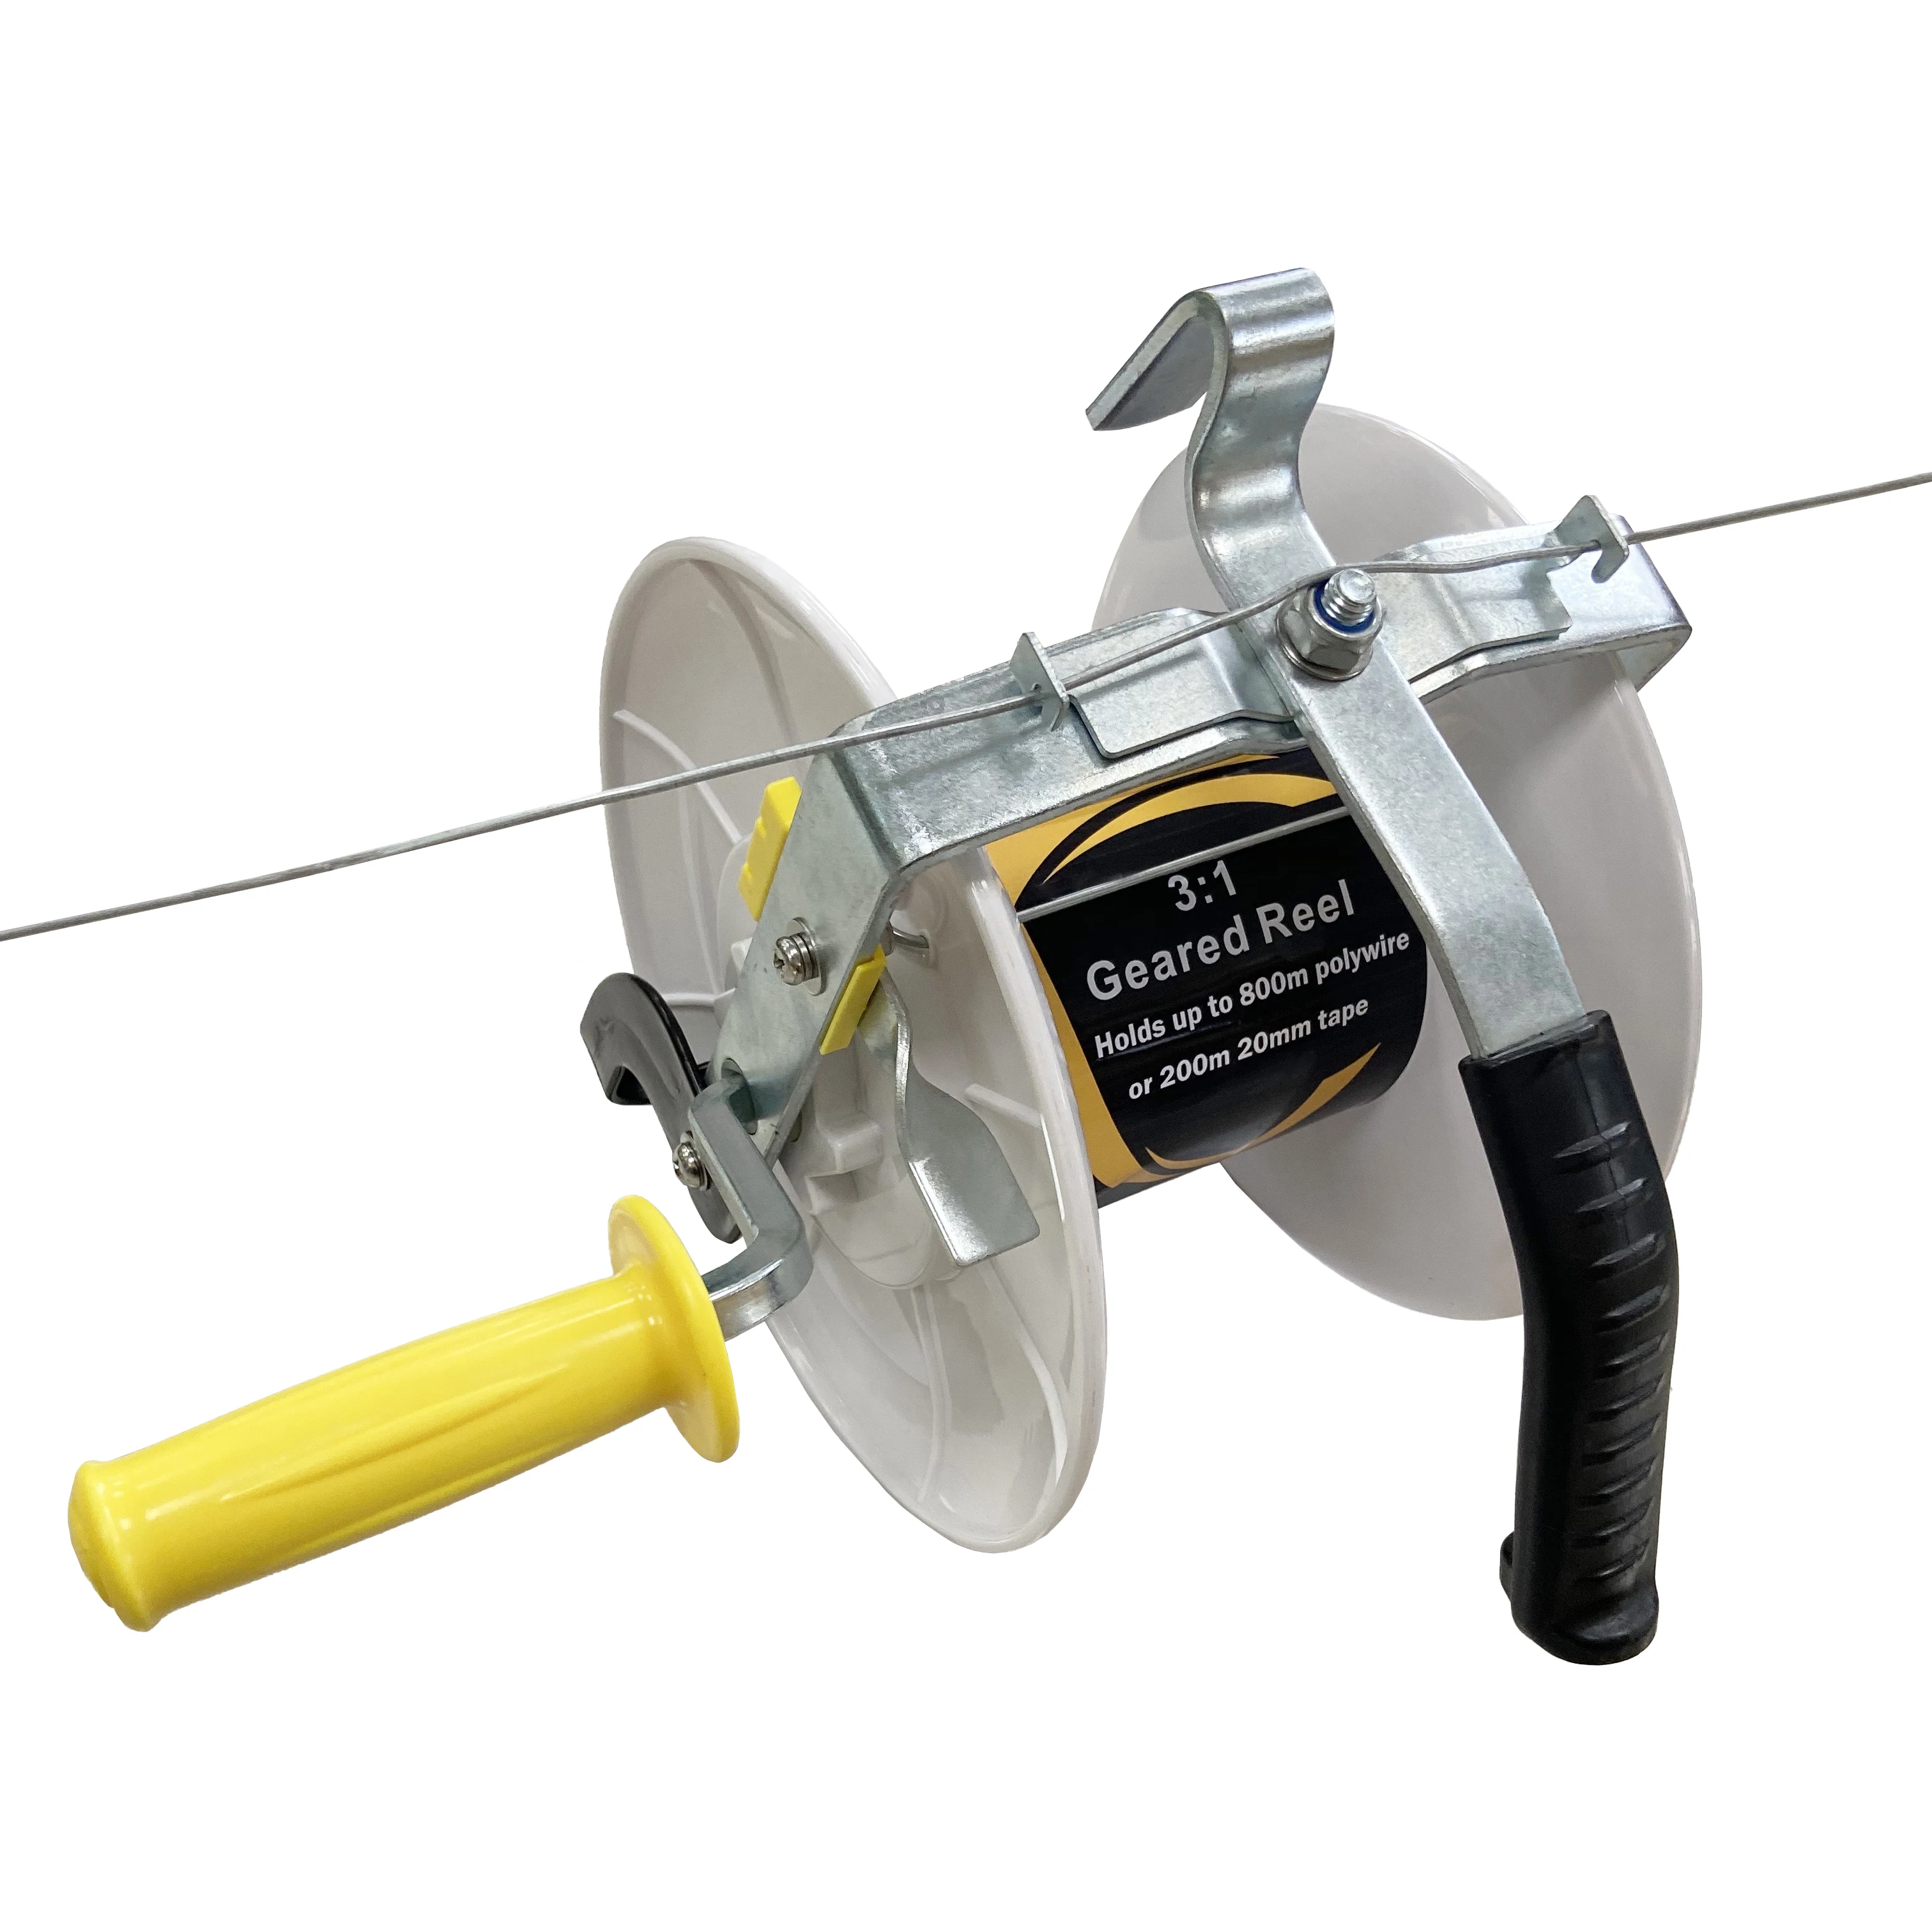 Fence reel 3:1 Geared Reel / Spool (3:1）ABS reel ,fishing reel free shipping